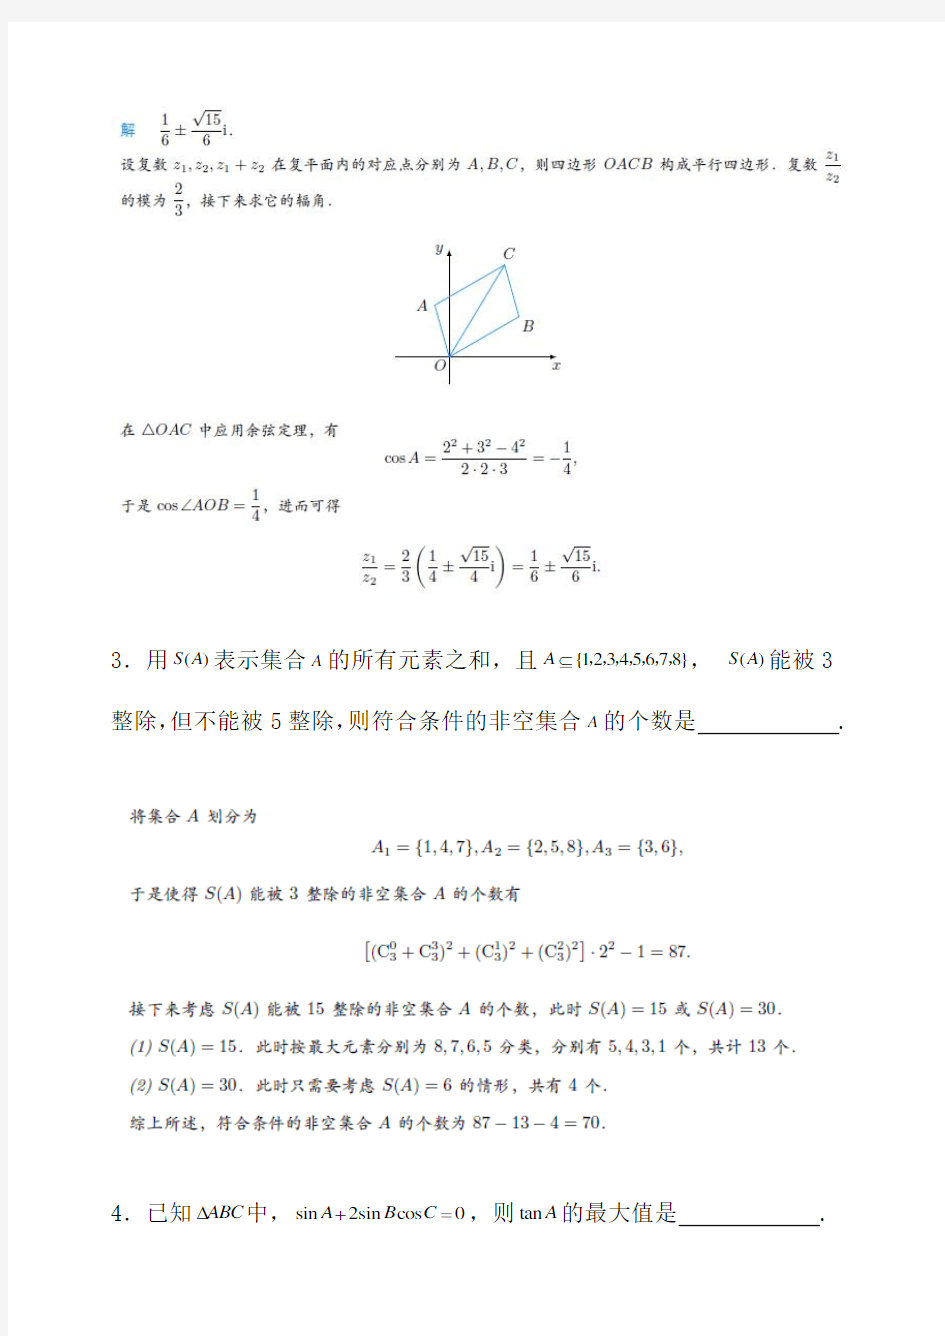 中国科学技术大学自主招生数学试题解答